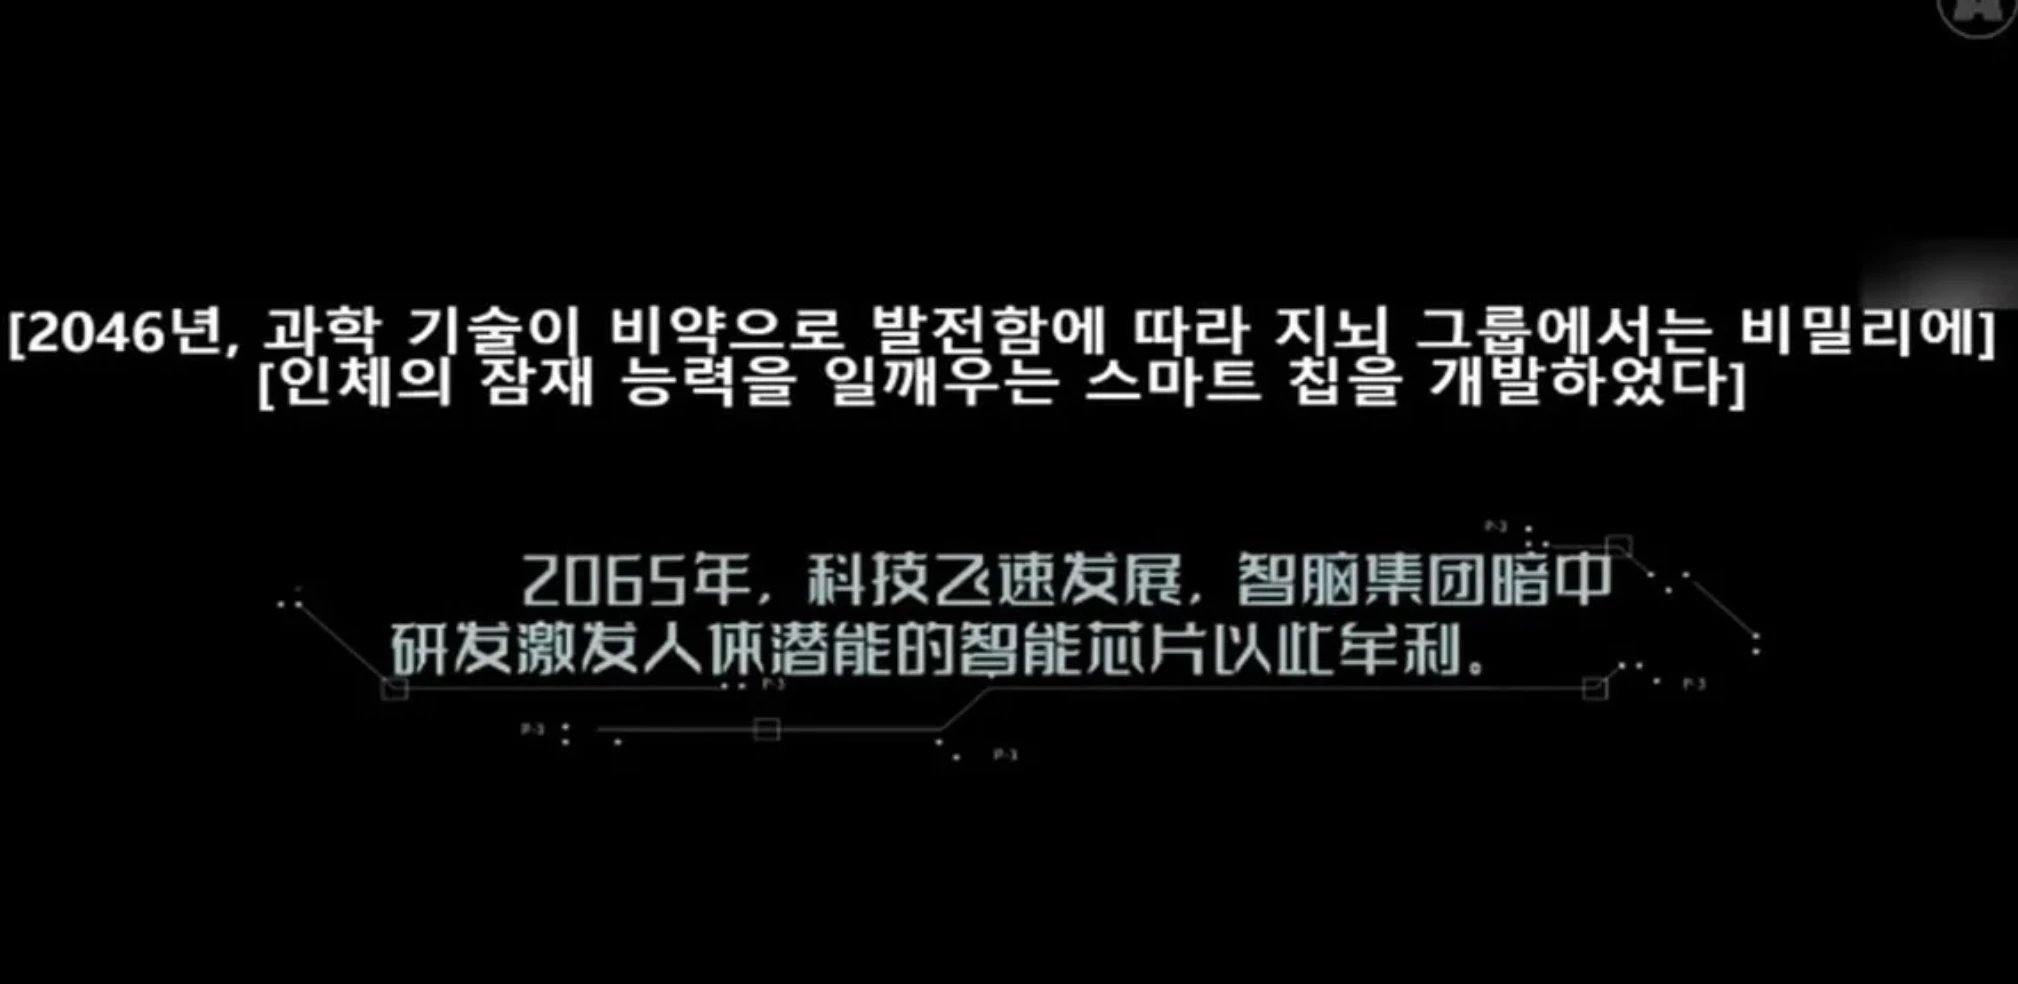 이하 유튜버 액피스가 소개한 중국 영화 "치명소녀희" /&nbsp;이하    유튜브 ‘액피스’, ‘치명소녀희’